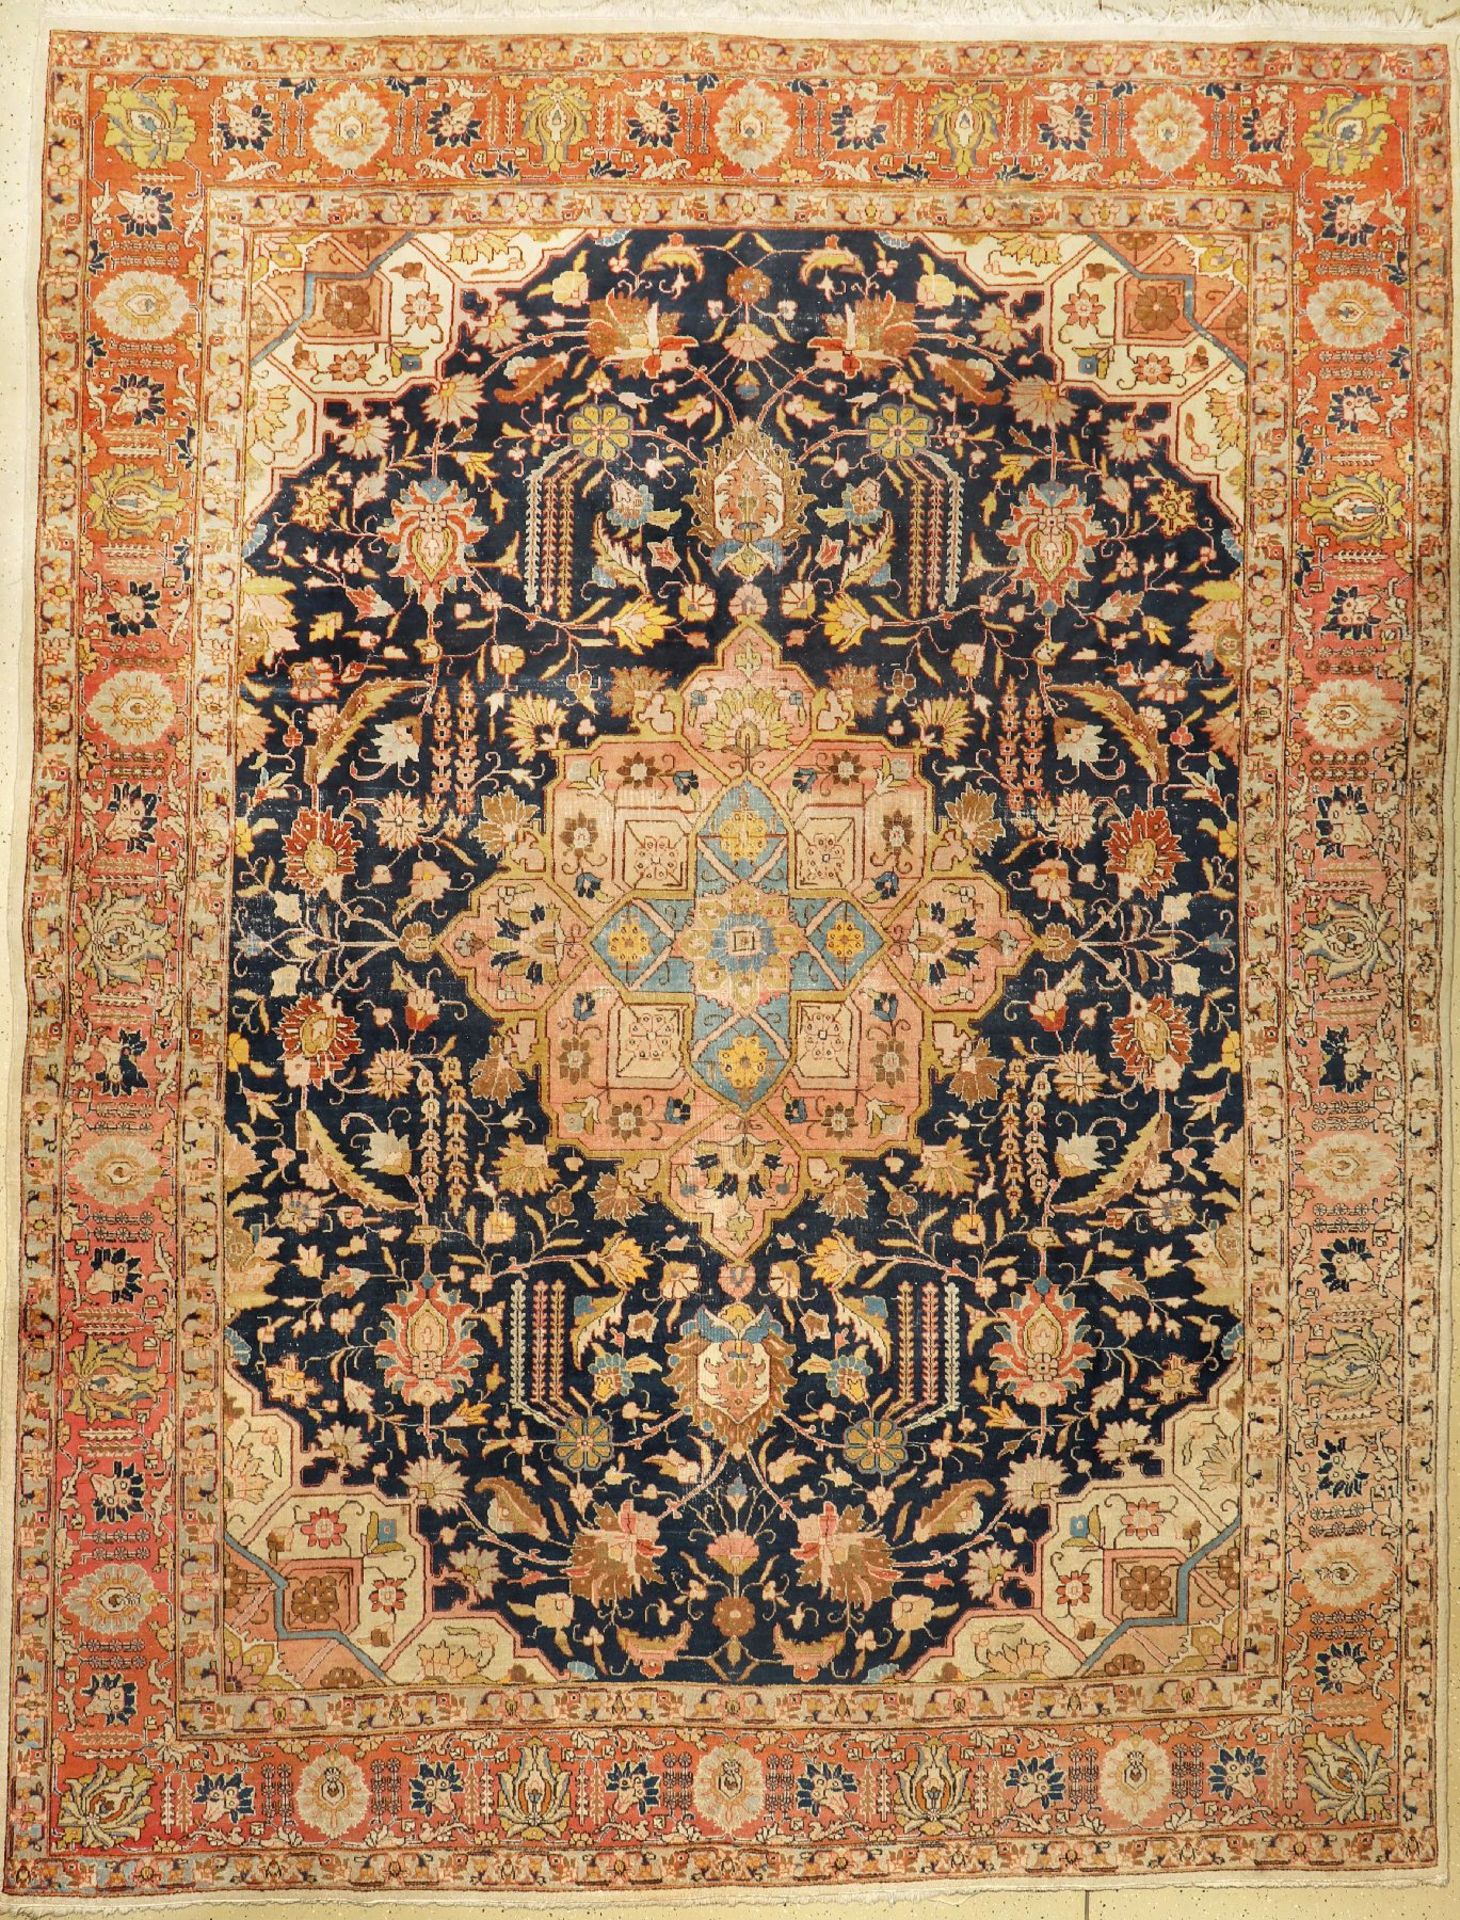 Täbriz, Persien, um 1920, Wolle auf Baumwolle, ca. 375 x 286 cm, EHZ: 4Tabriz, Persia, around